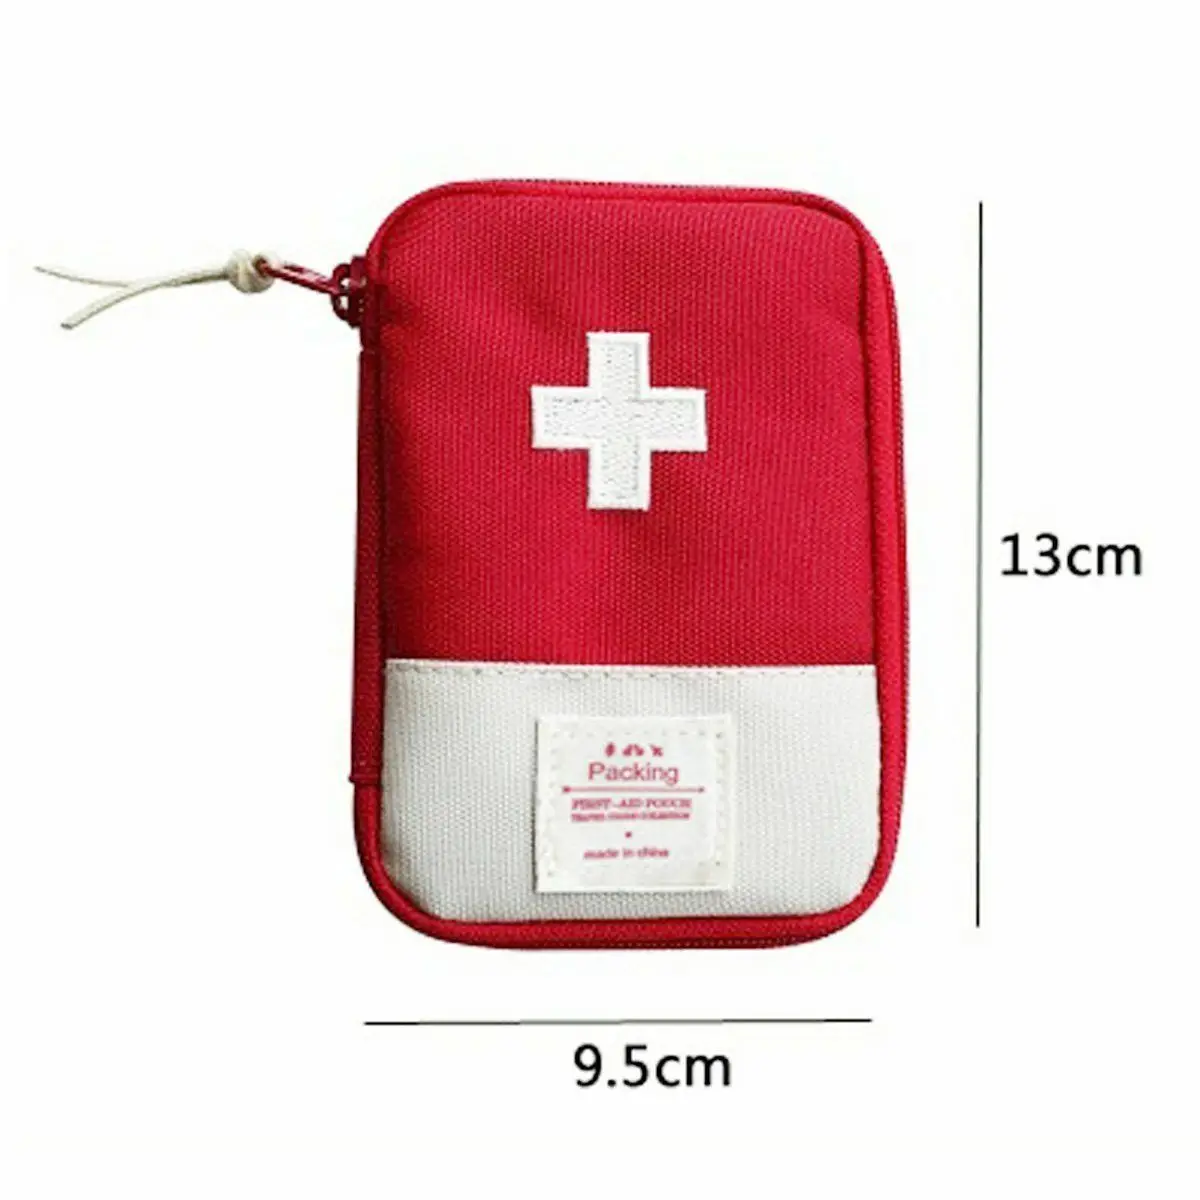 Мини-набор первой помощи для выживания в чрезвычайных ситуациях, сумка для путешествий, медицинская спортивная сумка, чехол